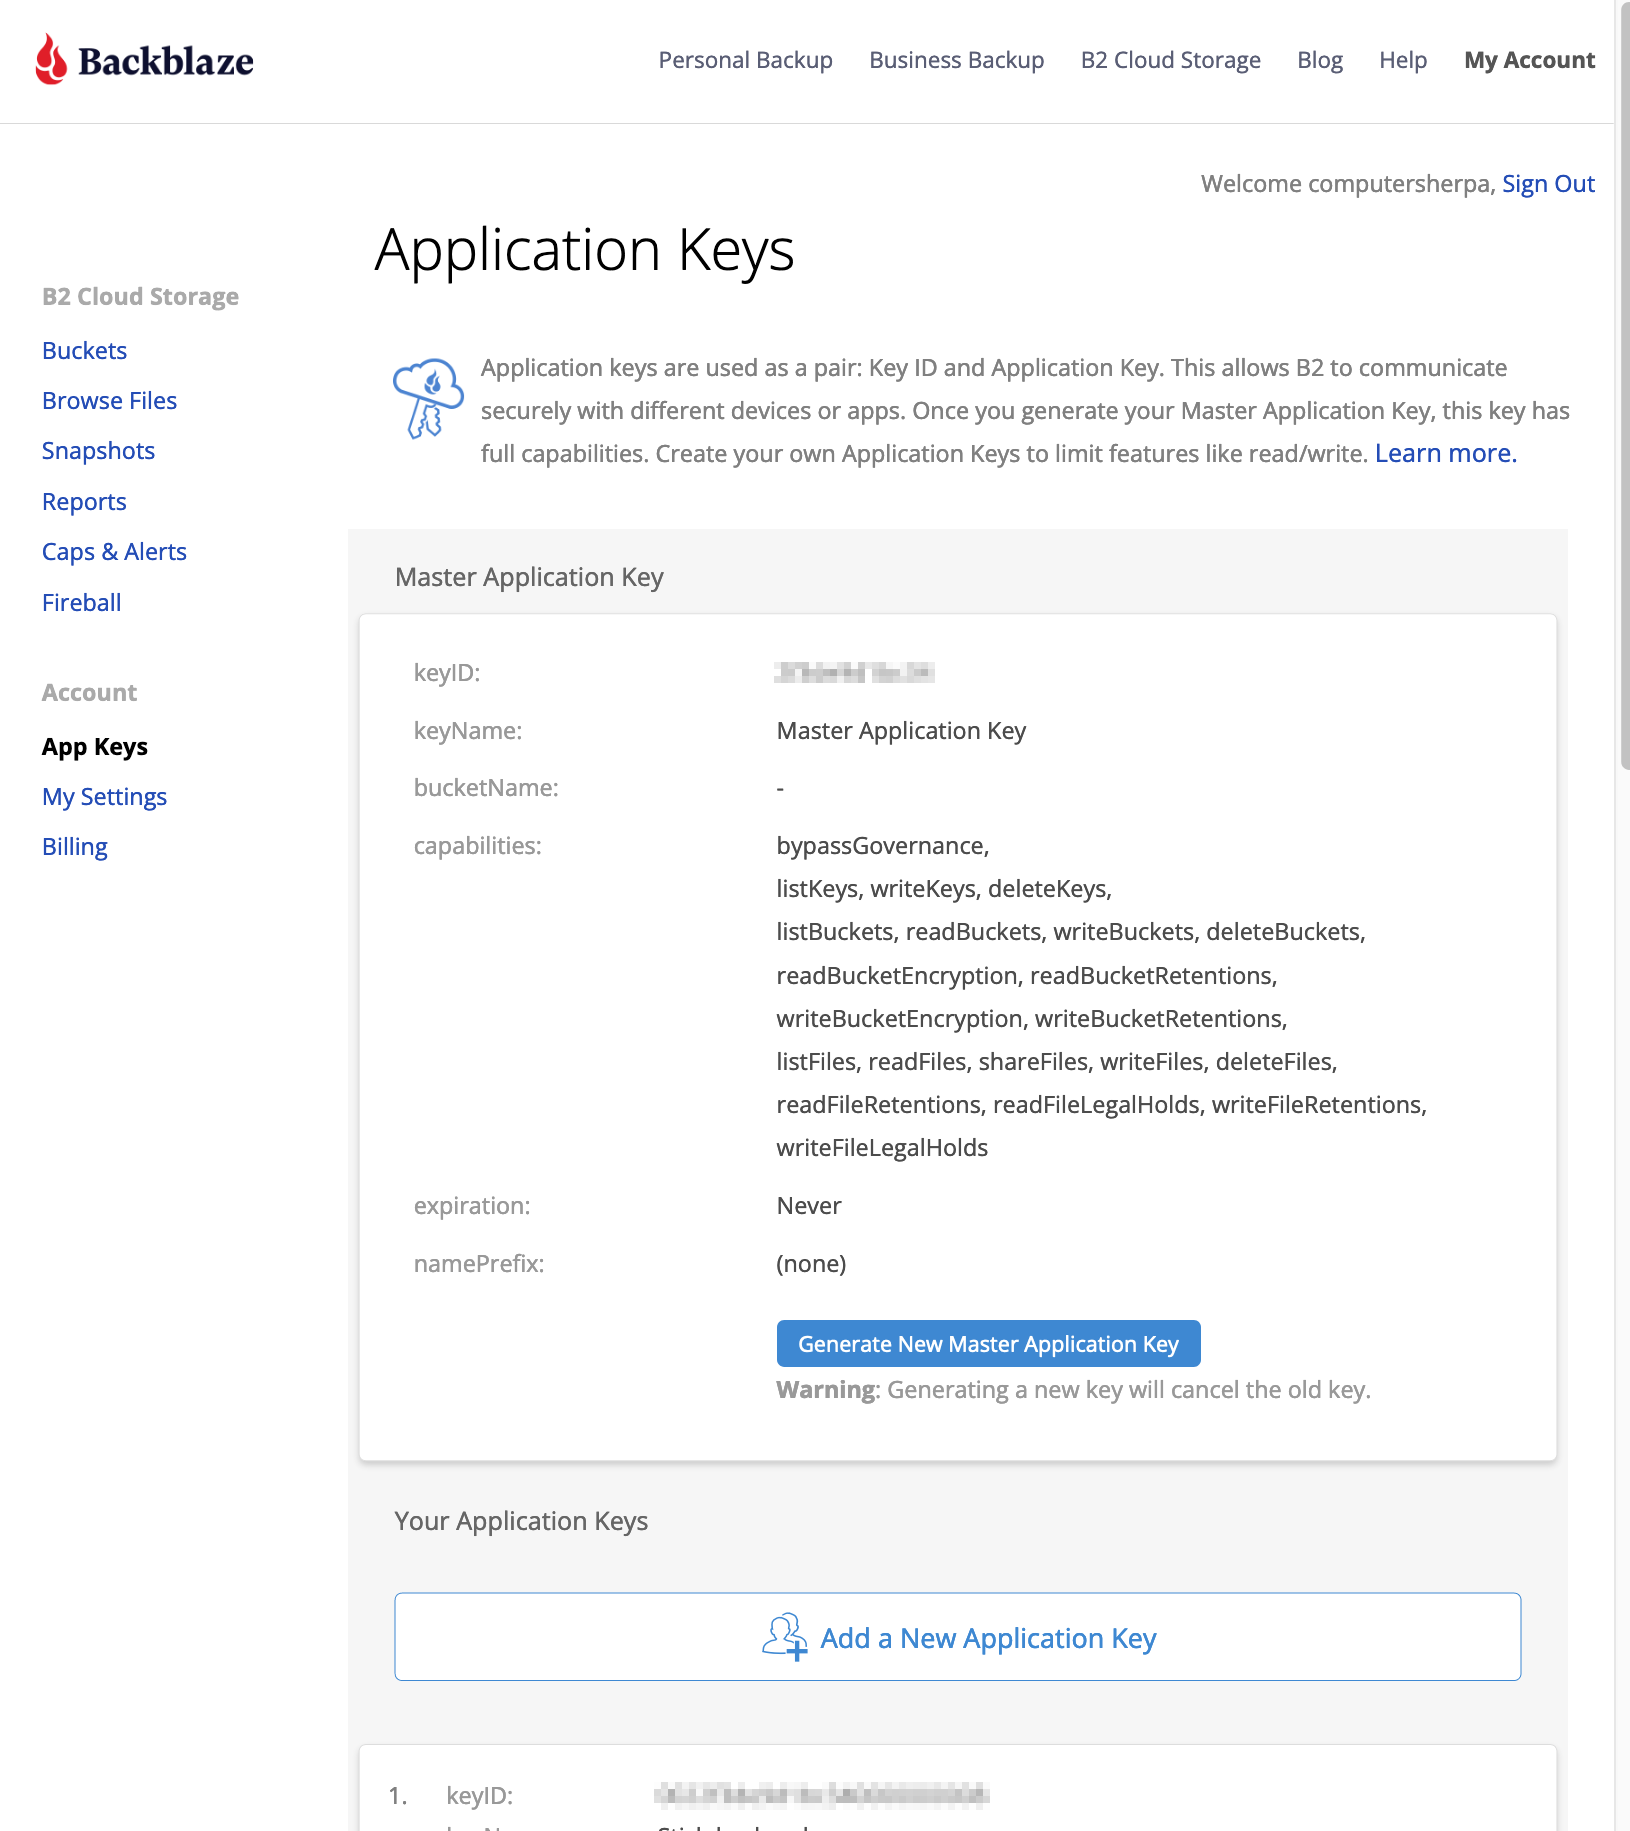 Backblaze's 'Application Keys' screen